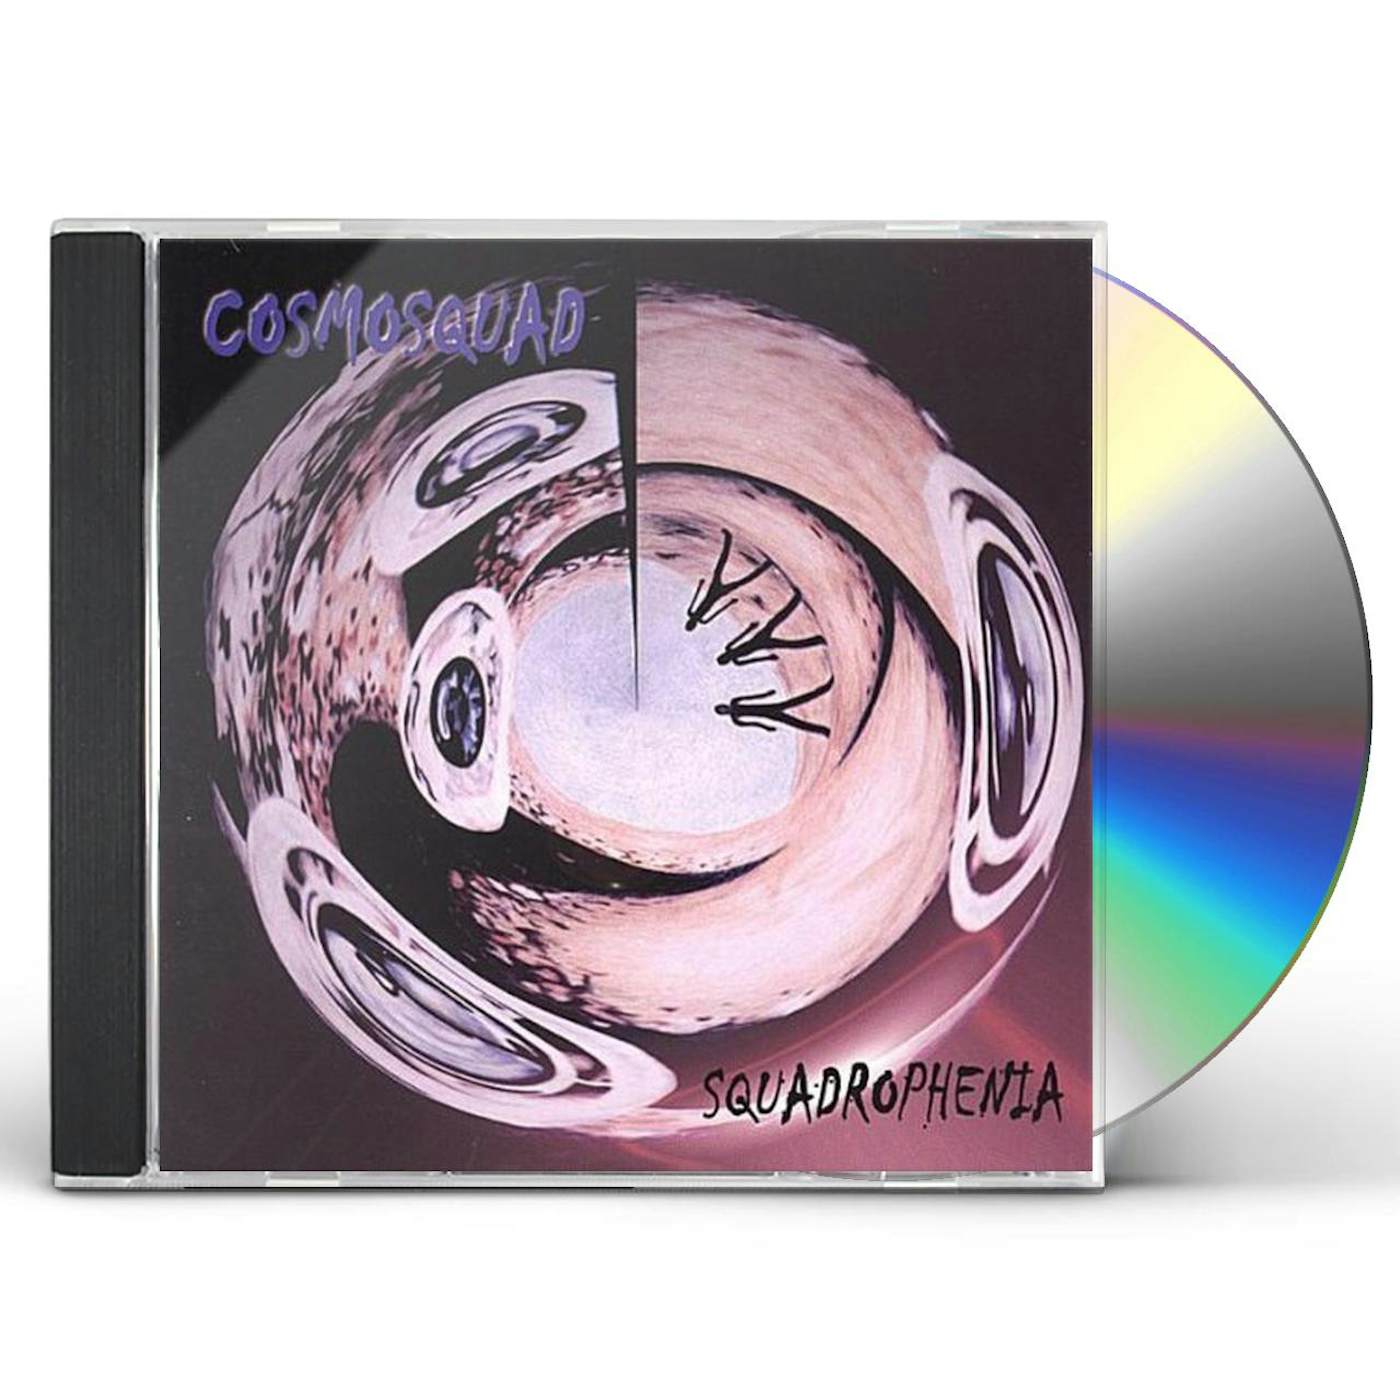 Cosmosquad SQUADROPHENIA CD